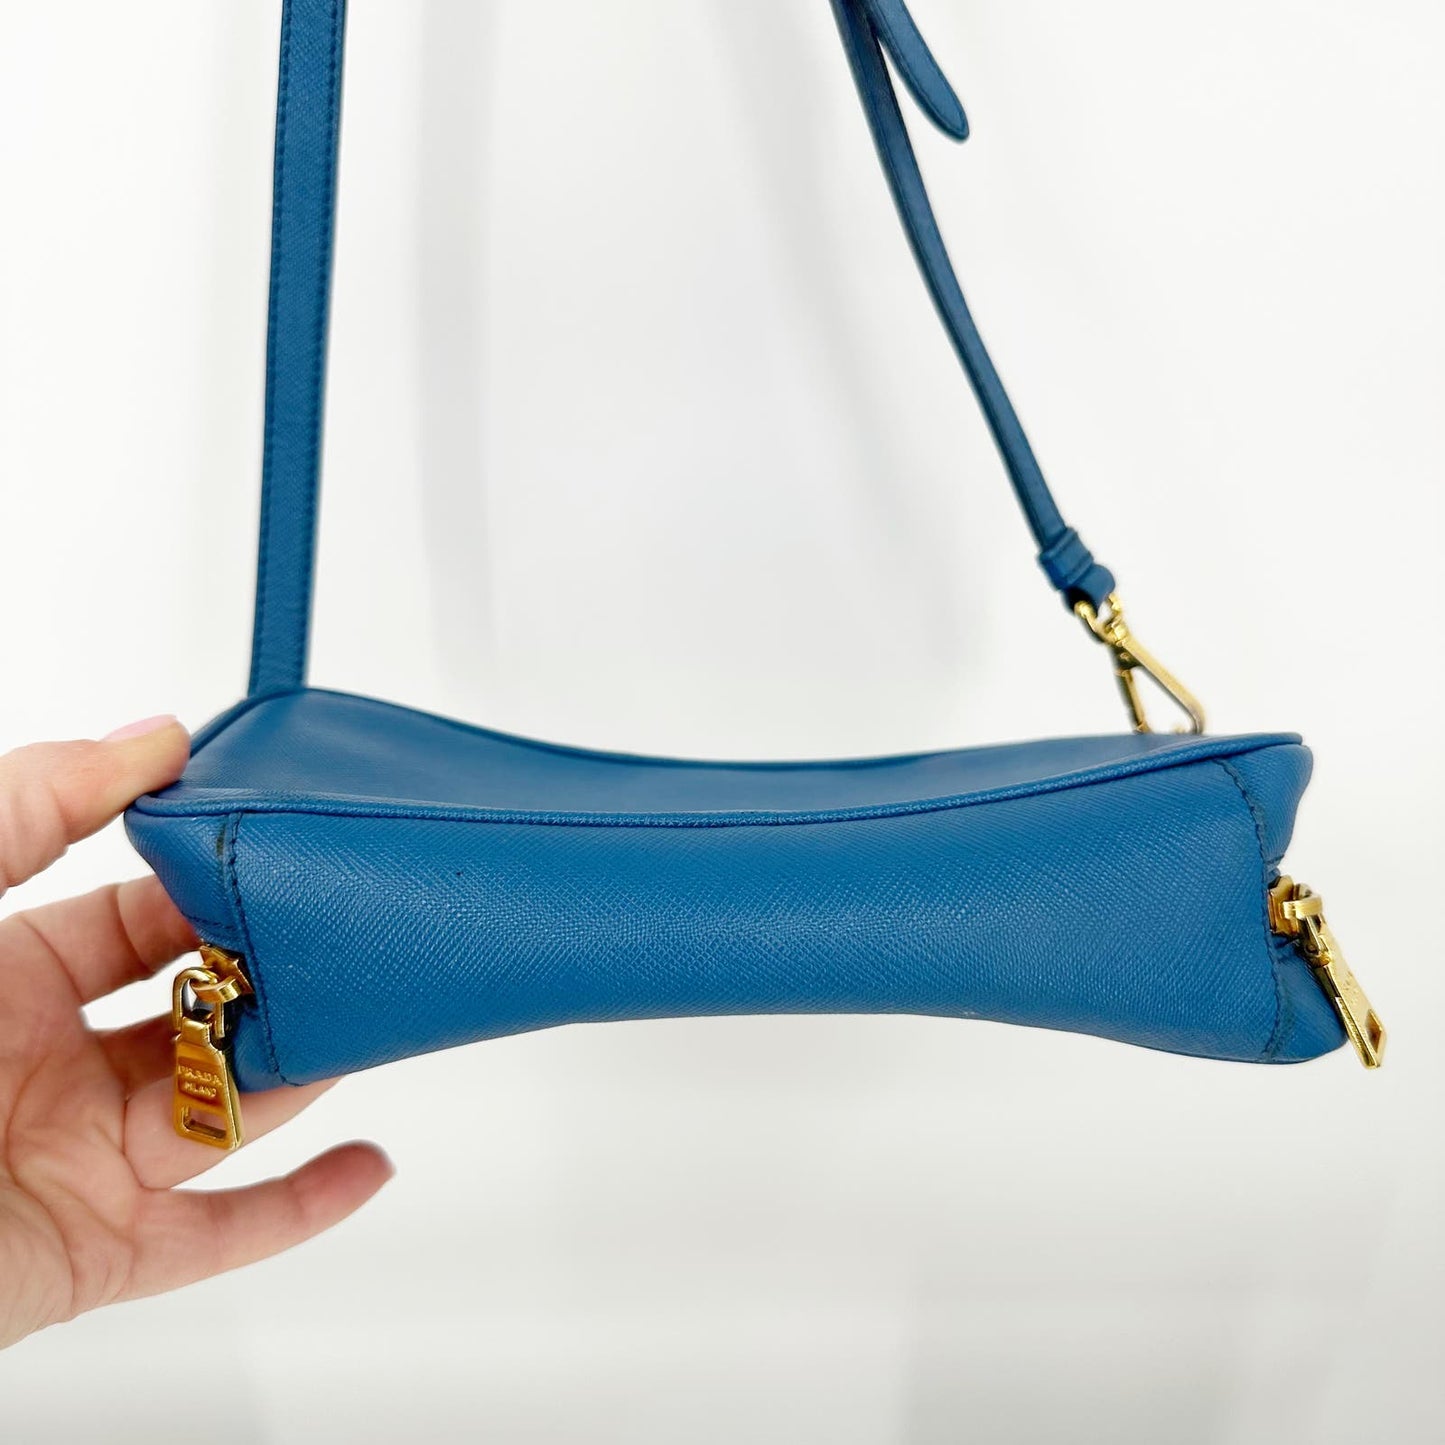 Prada Saffiano Pebbled Leather Small Camera Bag Crossbody Purse Blue